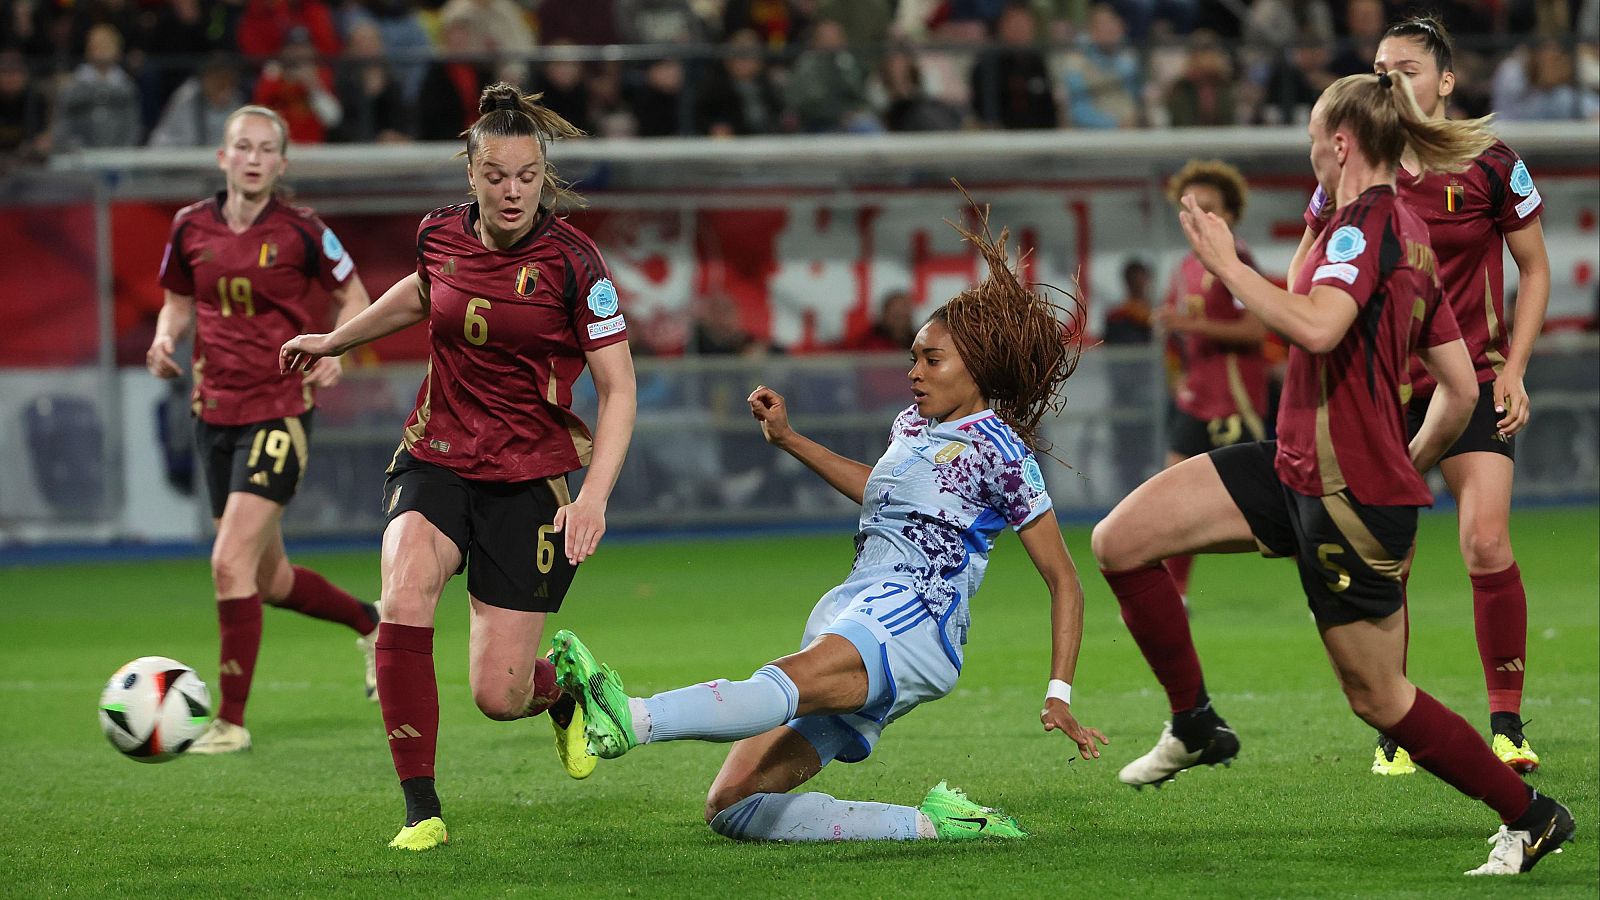 Fútbol - Clasificación Cto. Europa Femenino (1ª Jornada): Bélgica - España - ver ahora